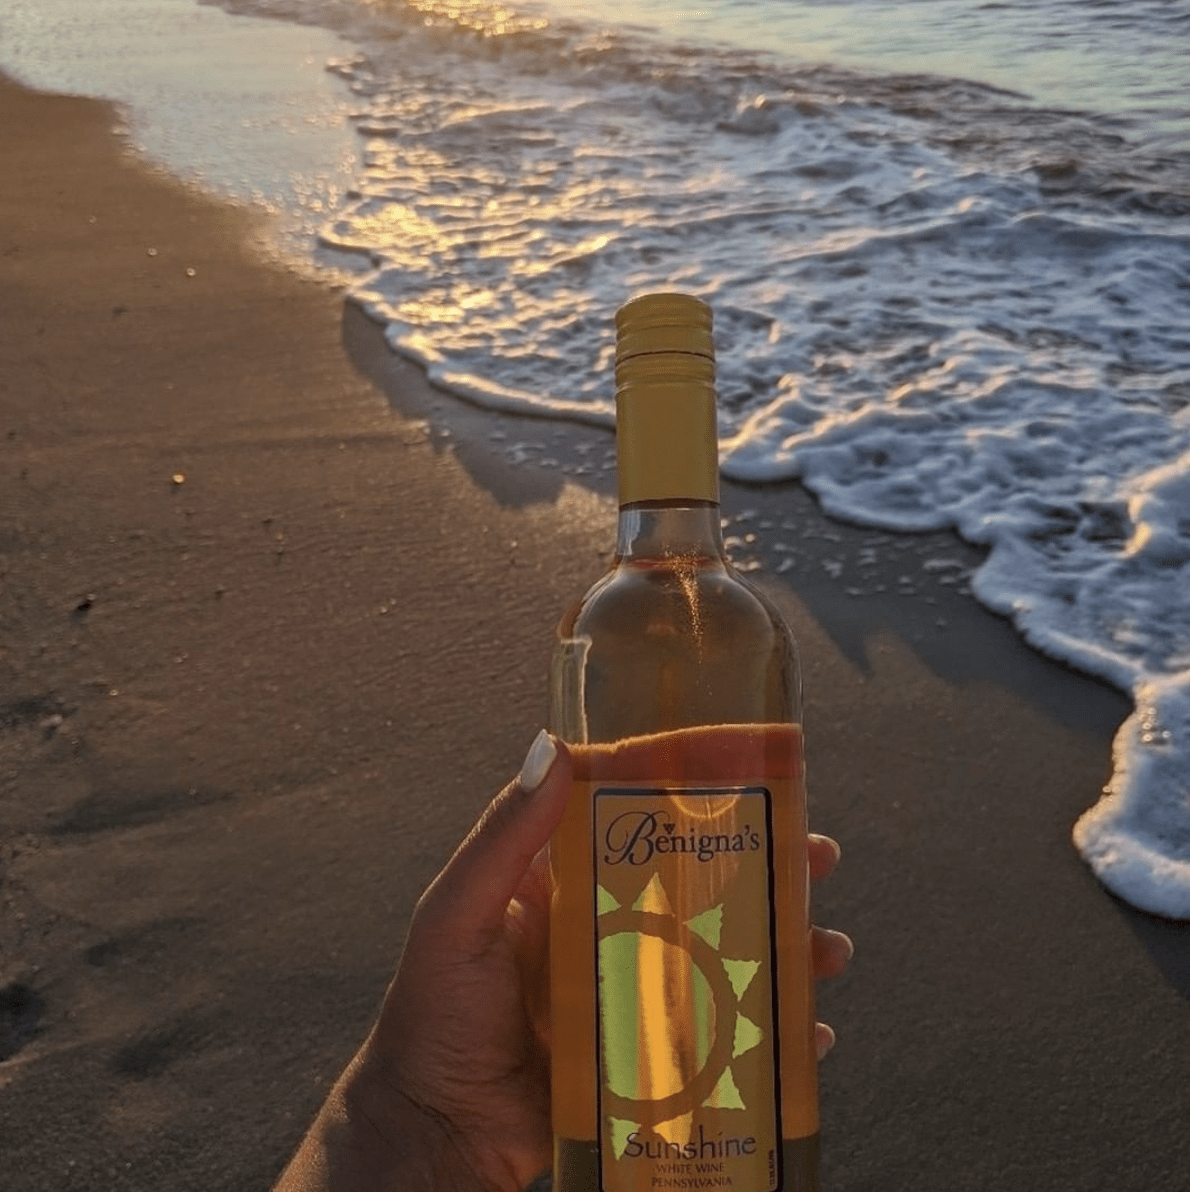 sunshine wine at the beach